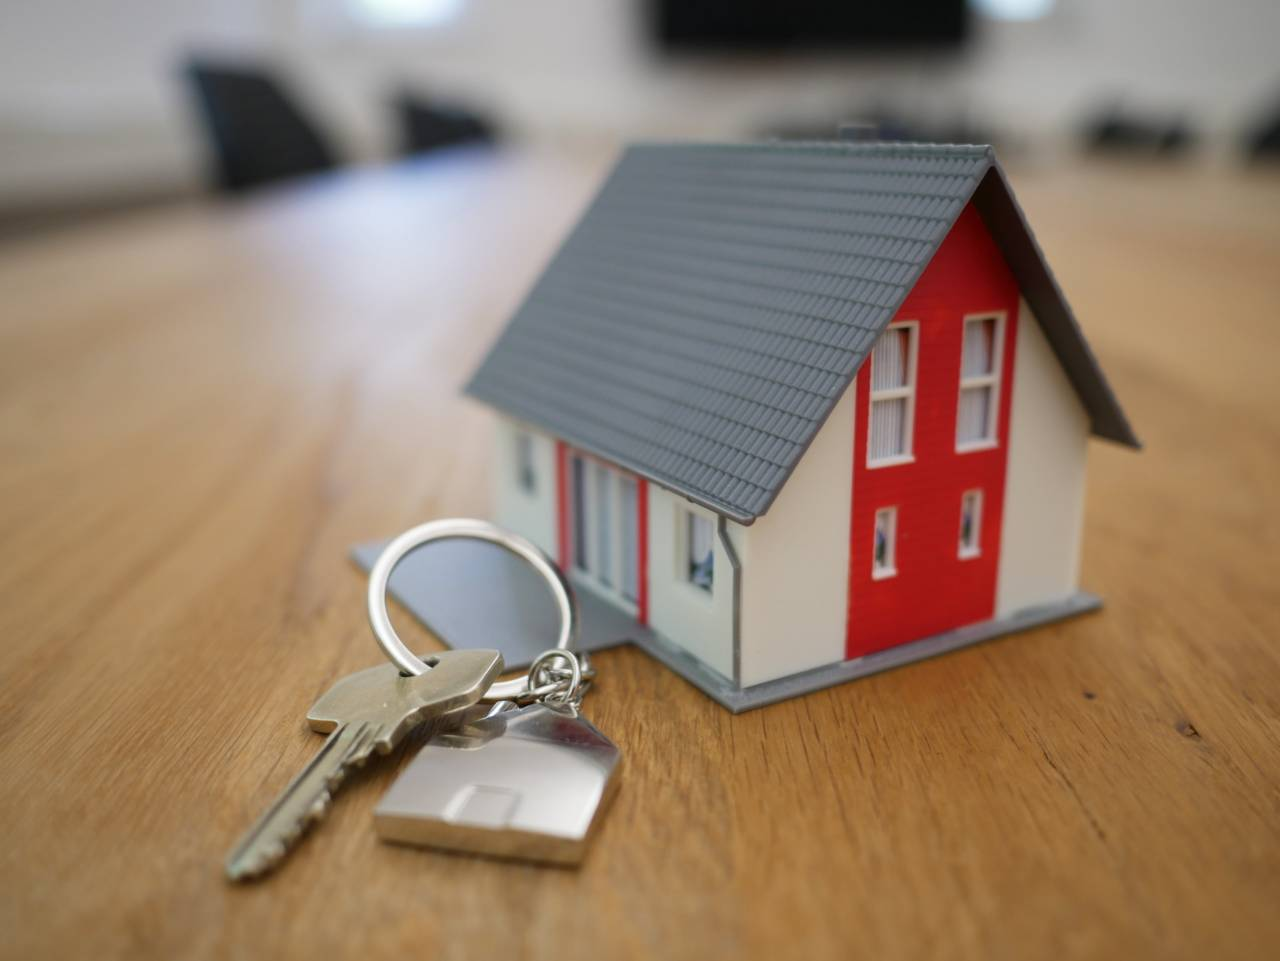 Dům a klíč